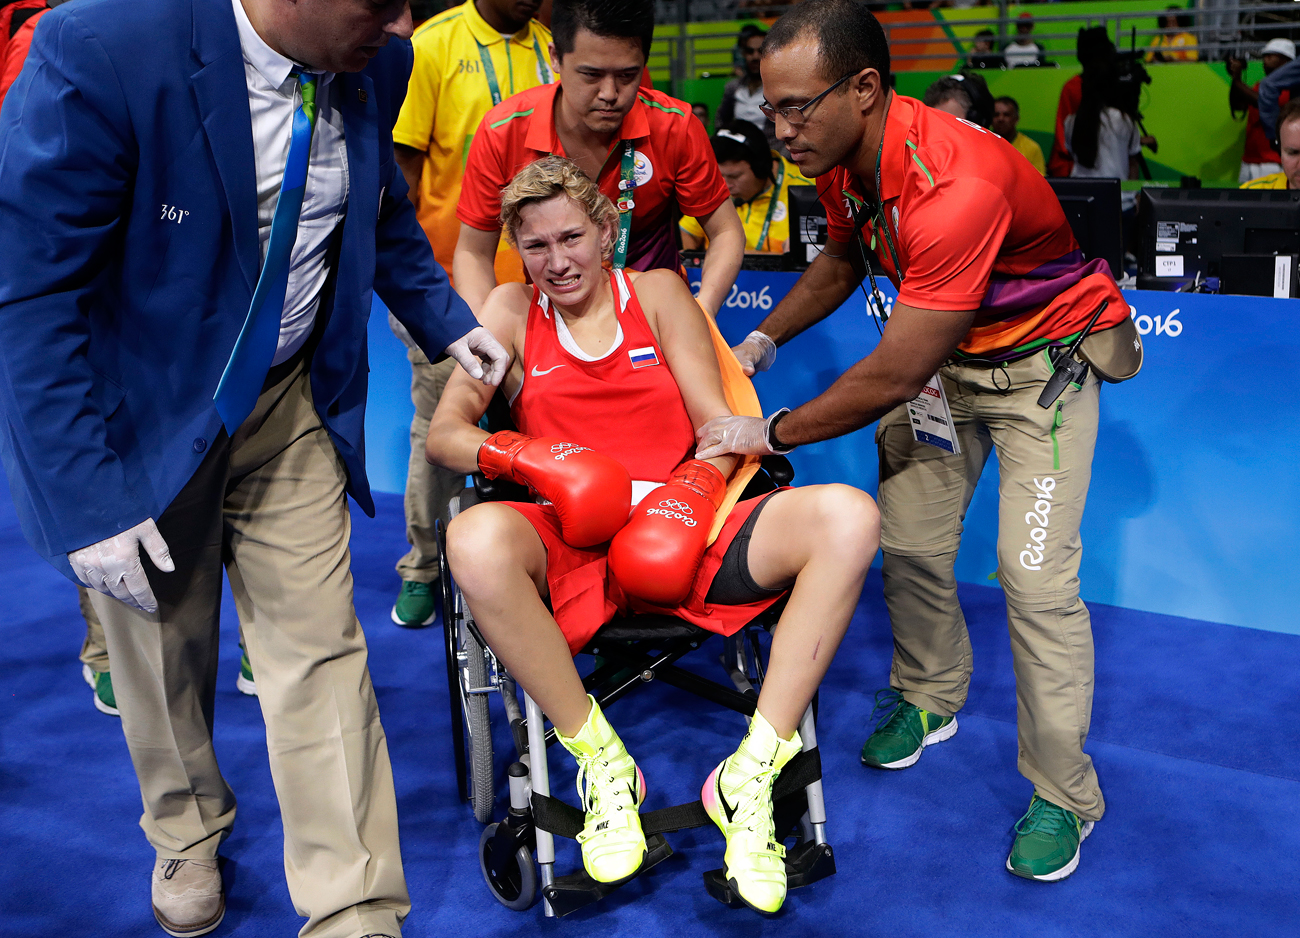 Русинката Анастасија Бељакова со придружба го напушта рингот откако прими удар во левиот лакт од Французинката Естел Мозели во текот на полуфиналето за боксерки до 60 килограми на Олимпијадата во Рио 2016. Извор: AP